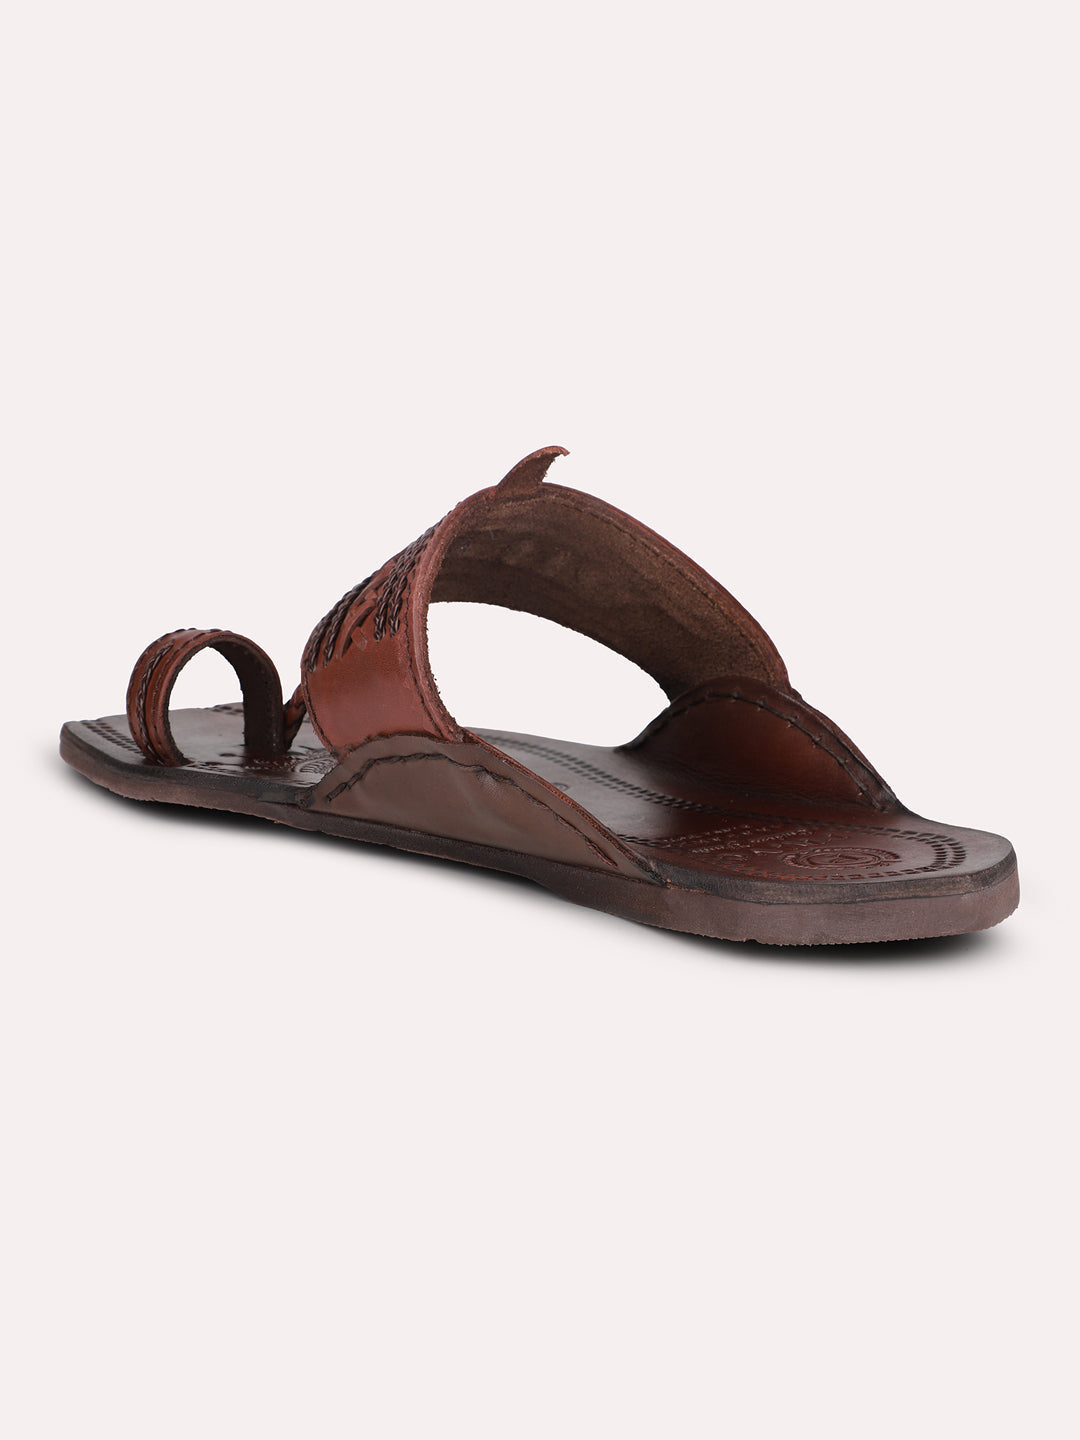 Privo Brown Kolhapuris Sandal for Men